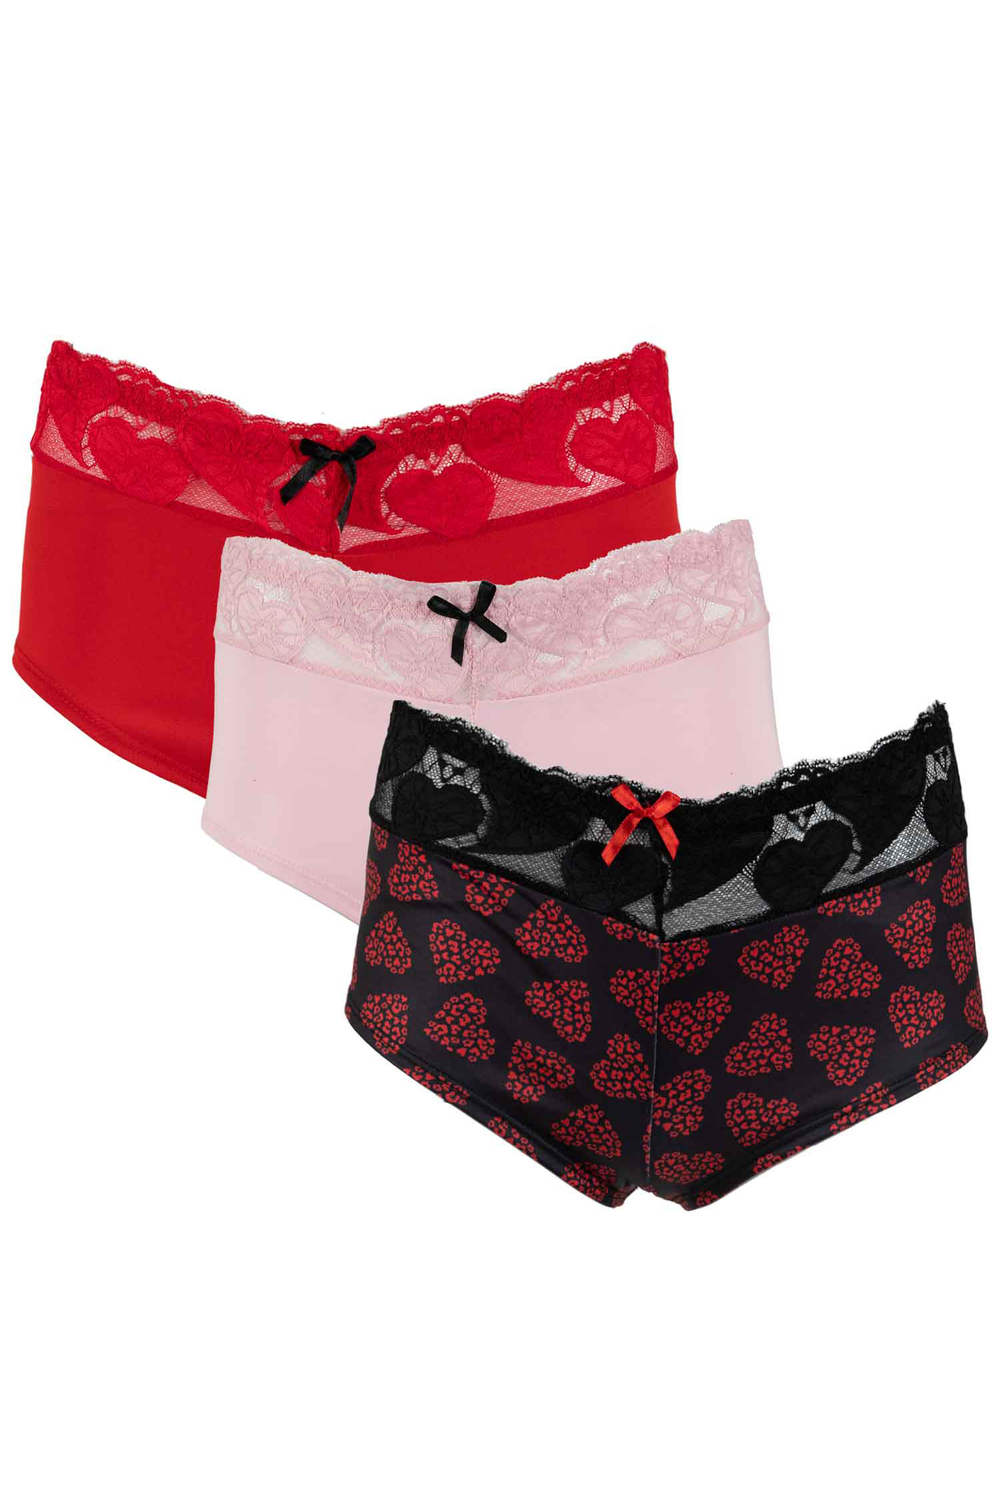 Set of 3 cotton boyshort underwear with elasticized lace waistband